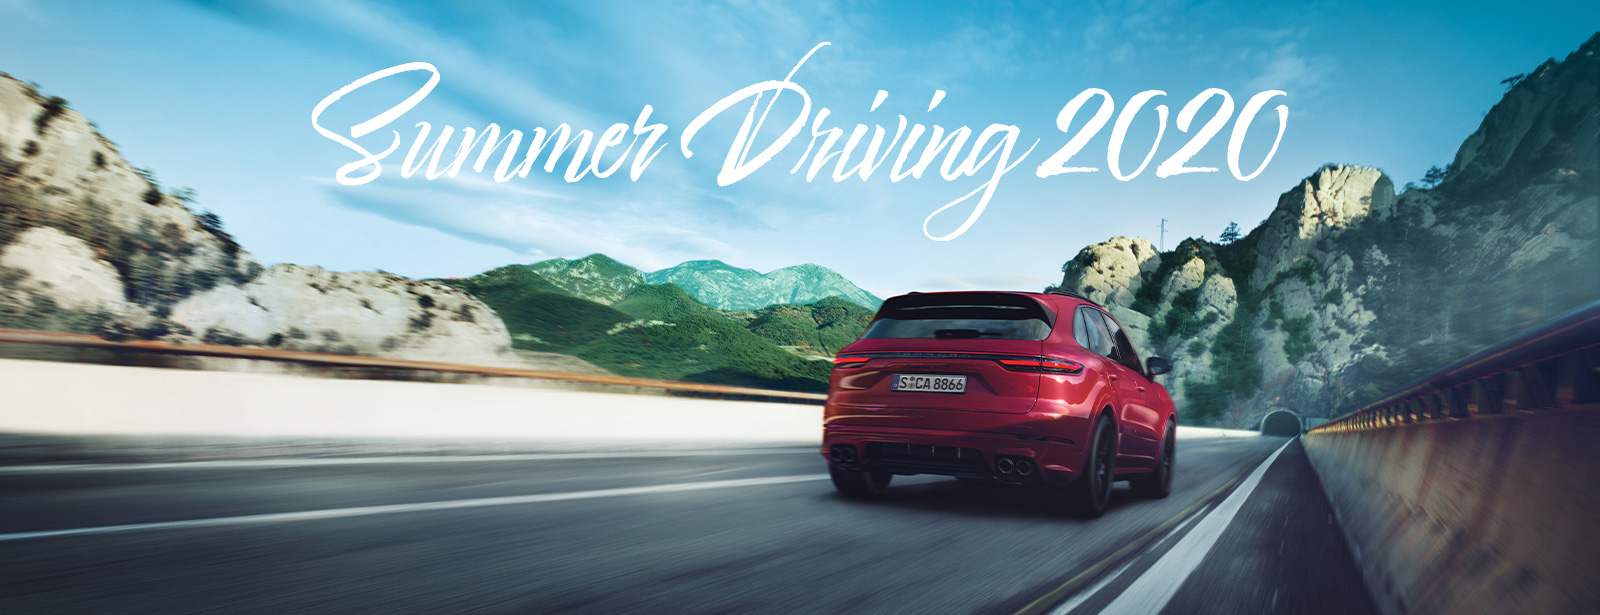 Porsche - Summer Driving 2020